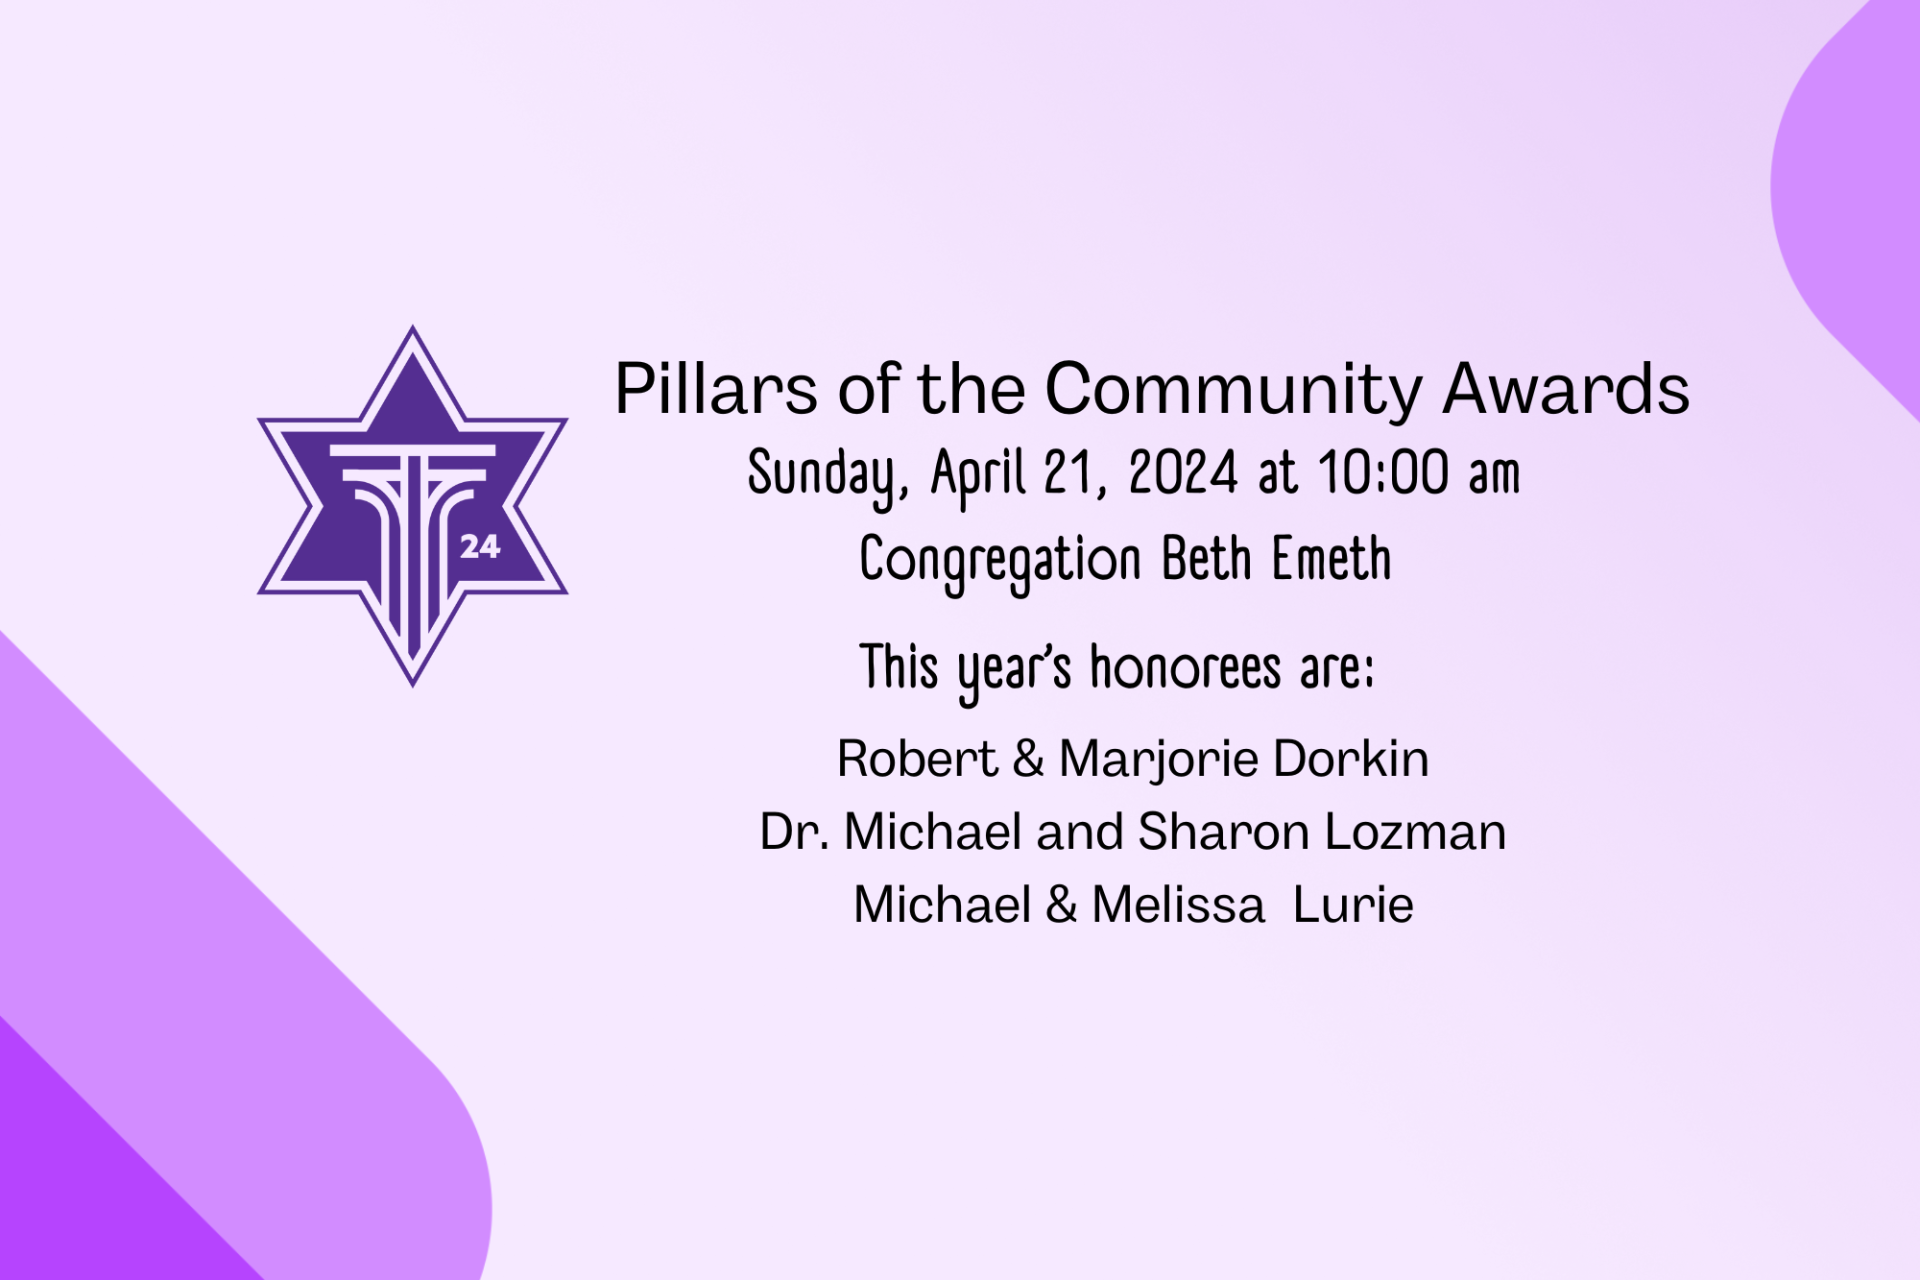 Pillars Awards